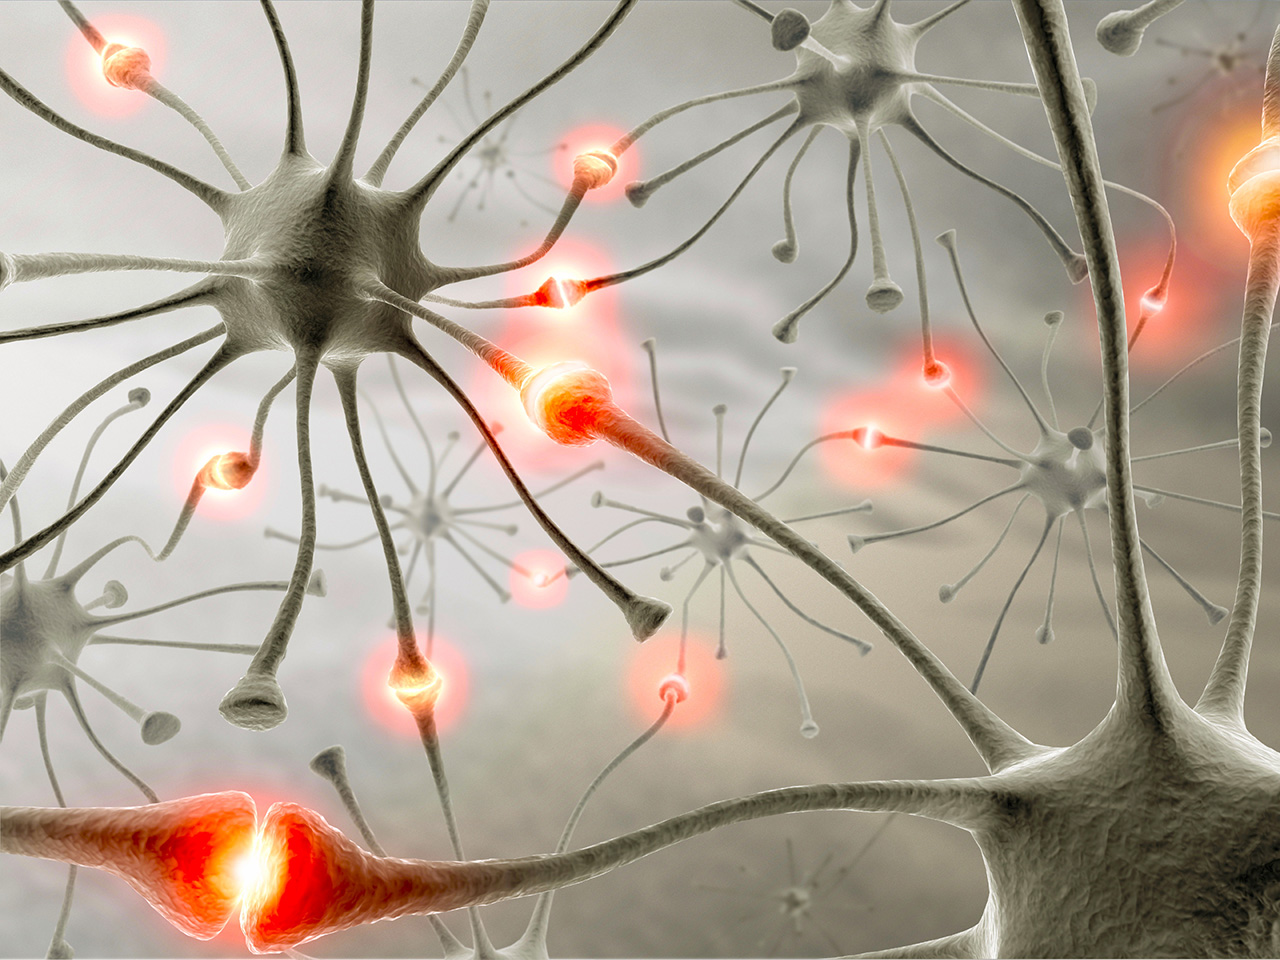 Учёные выяснили, что химические сигналы на мышцы при активности влияют на развитие нейронов